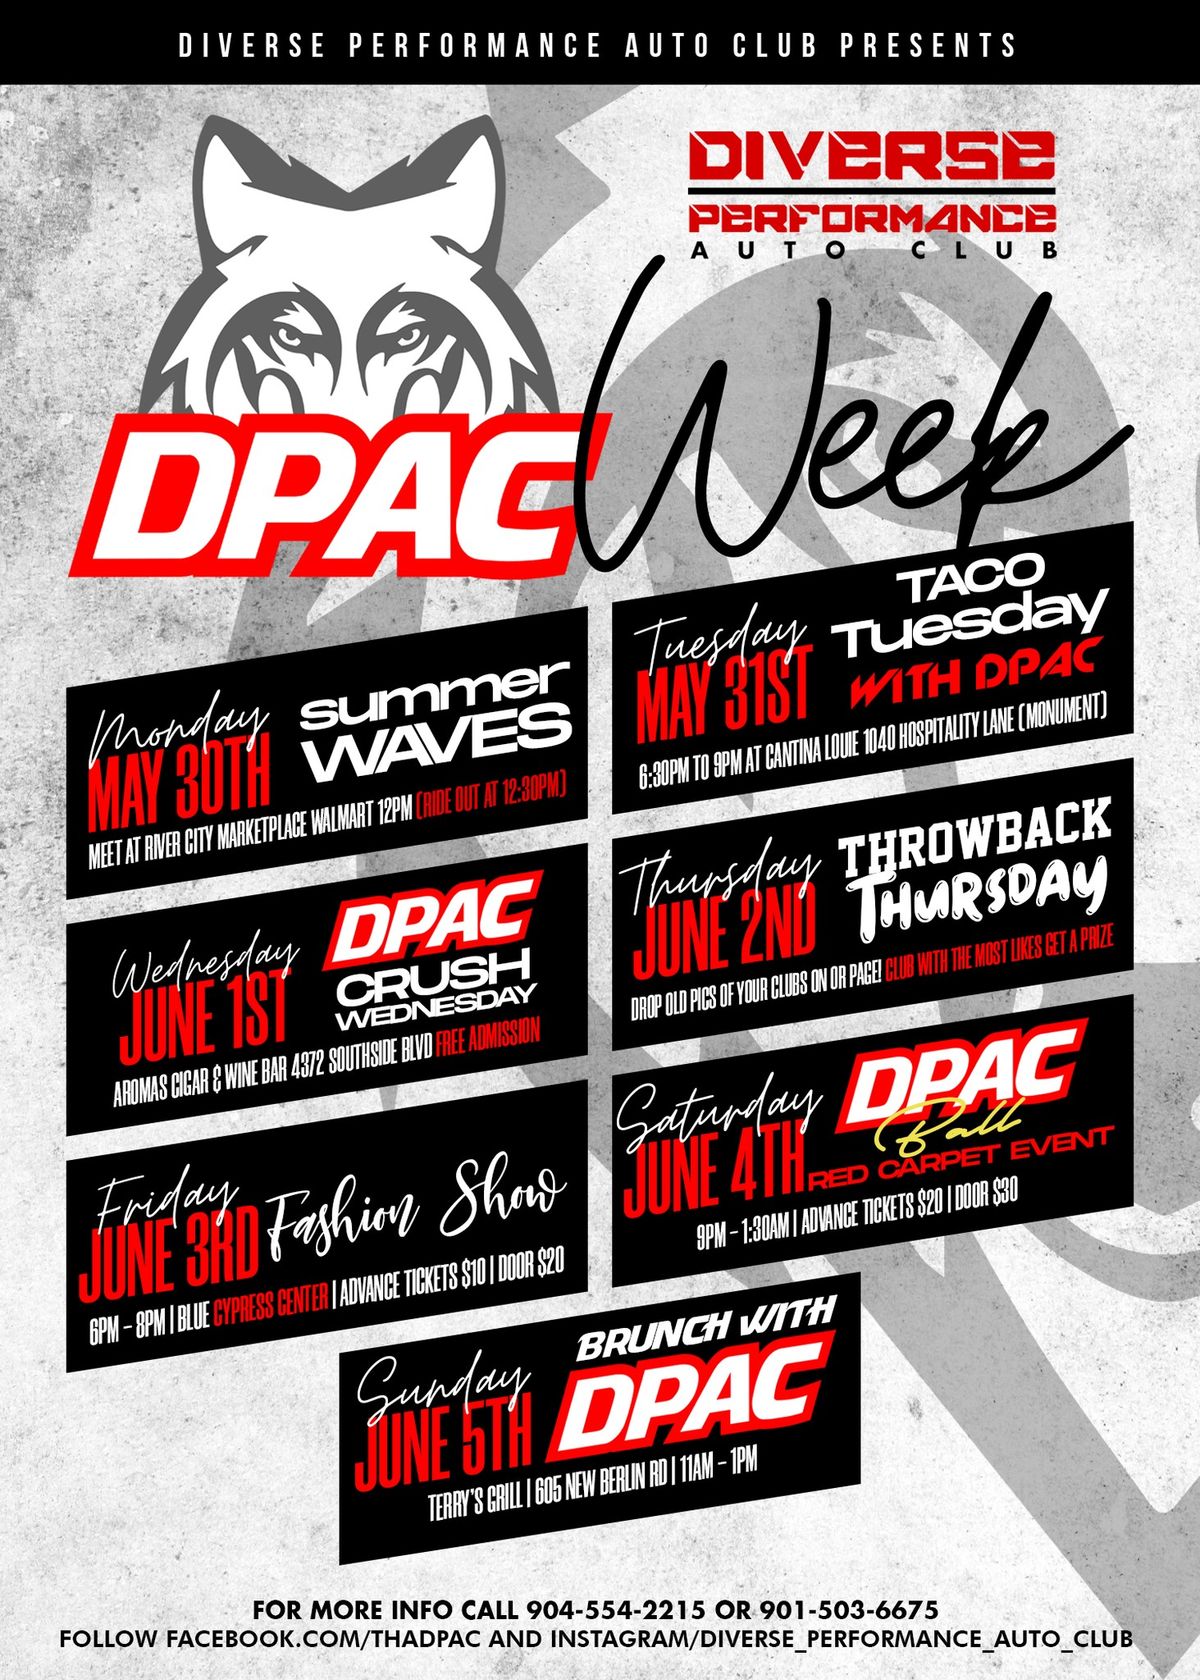 DPAC WEEK TACO TUESDAY